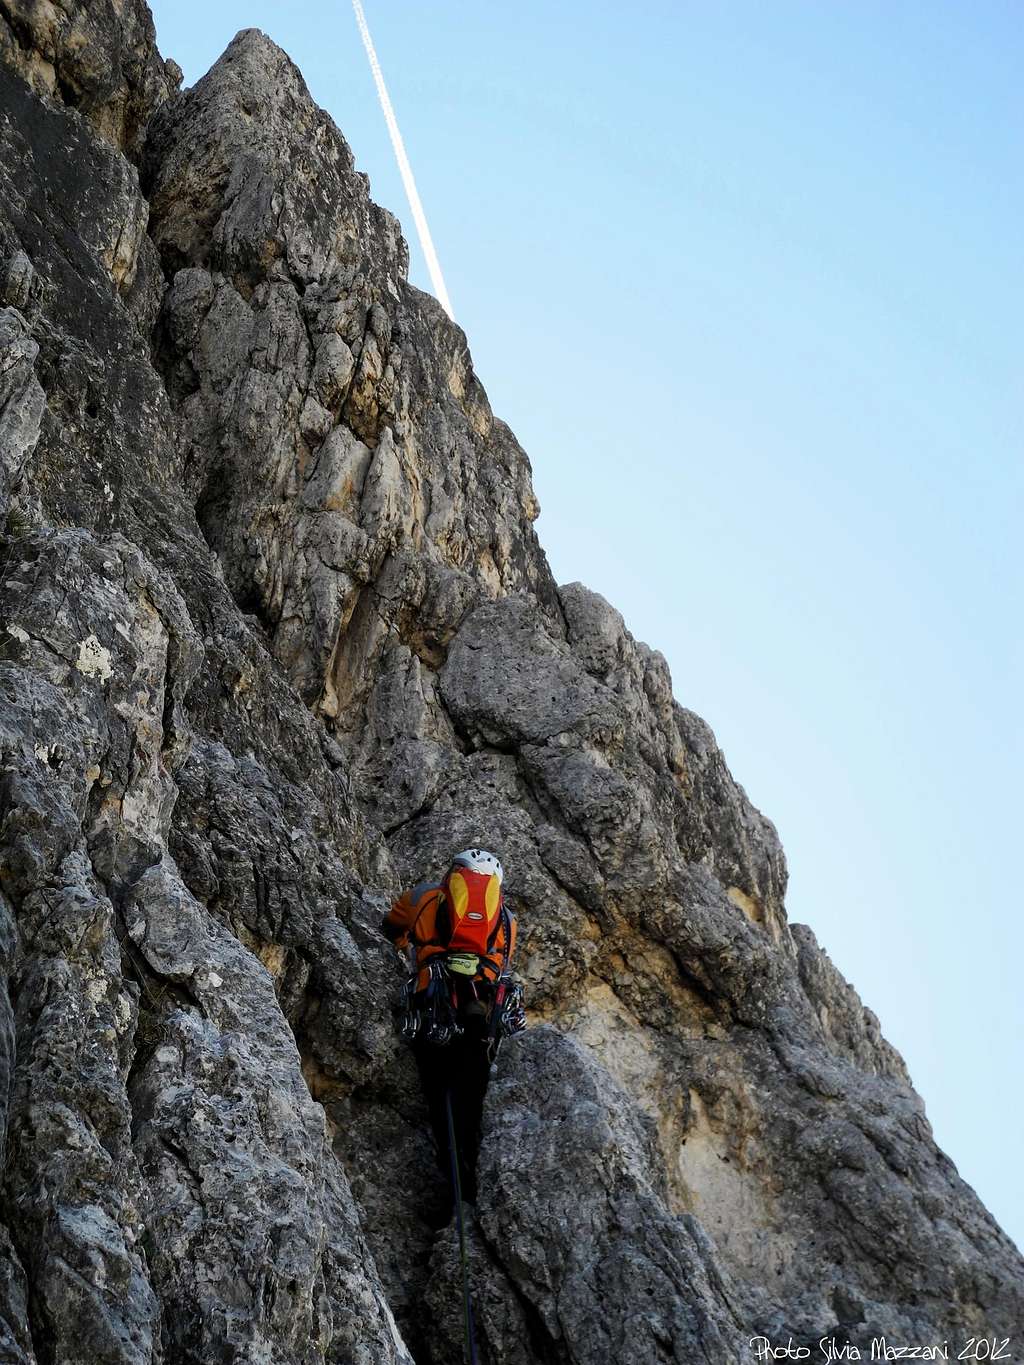 Climbing Comici route on Punta Col de Varda